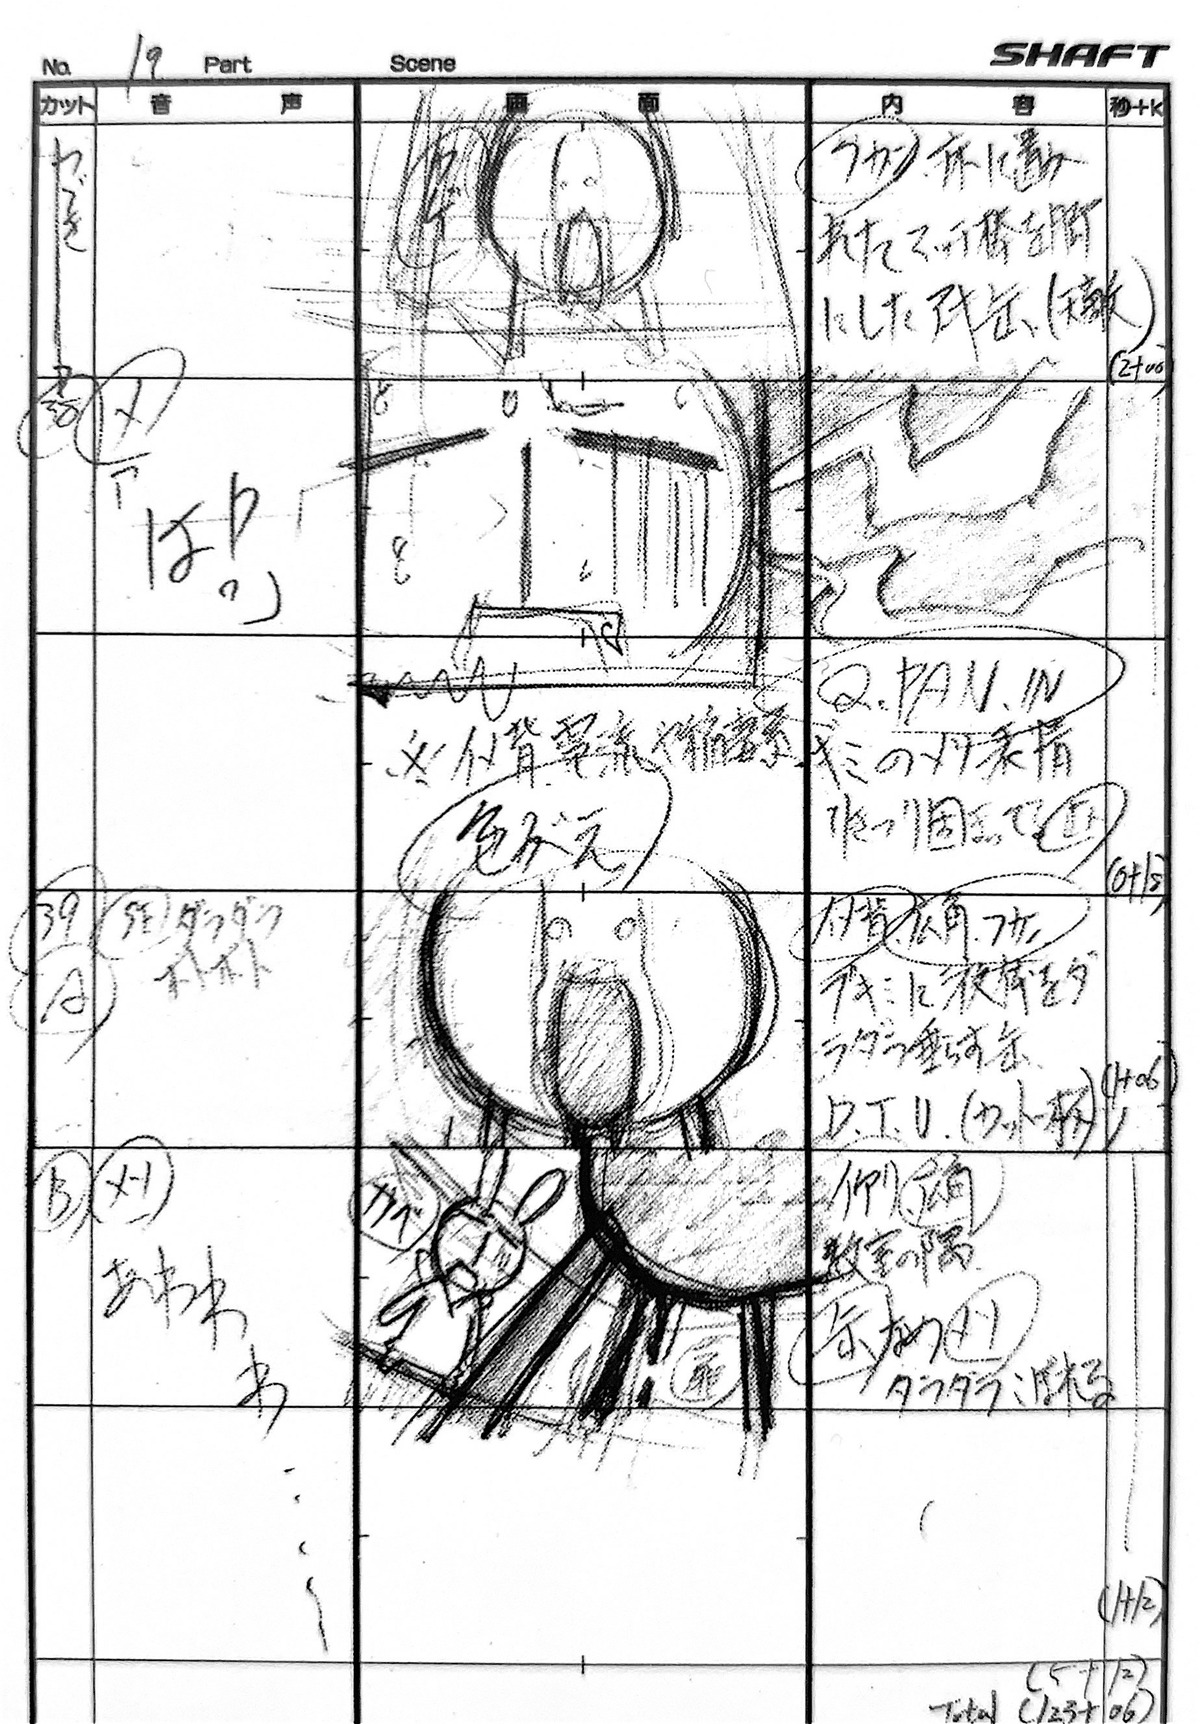 kazuhiro_ota paniponi_dash production_materials storyboard